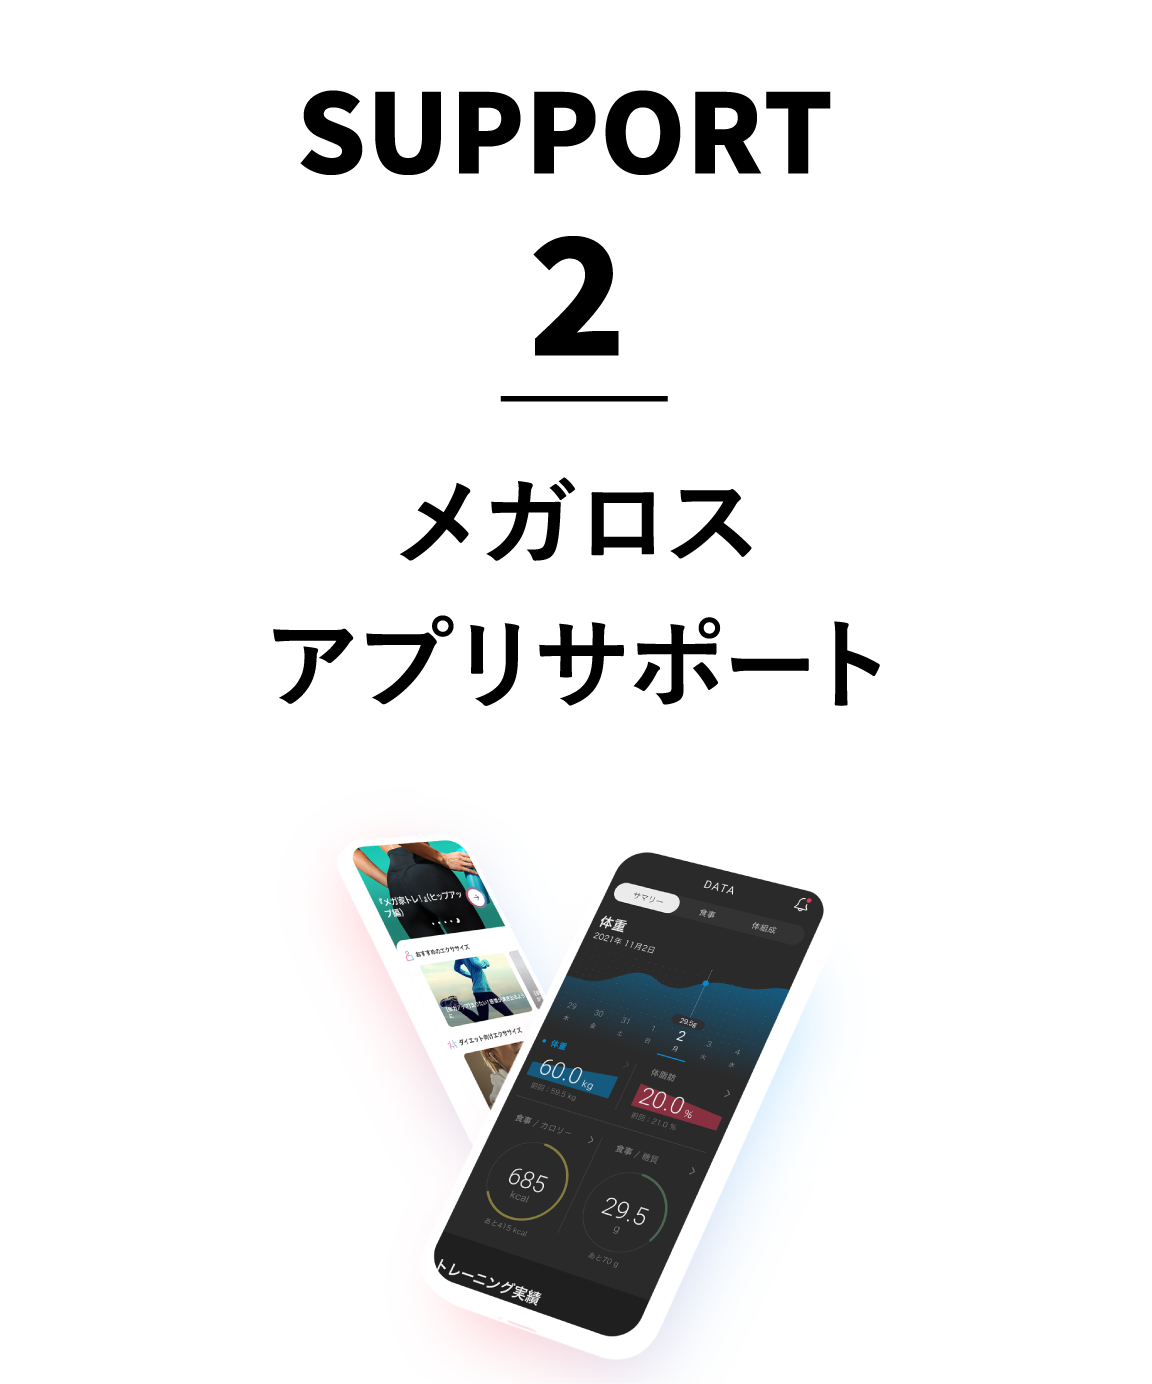 SUPPORT02.メガロスアプリサポート